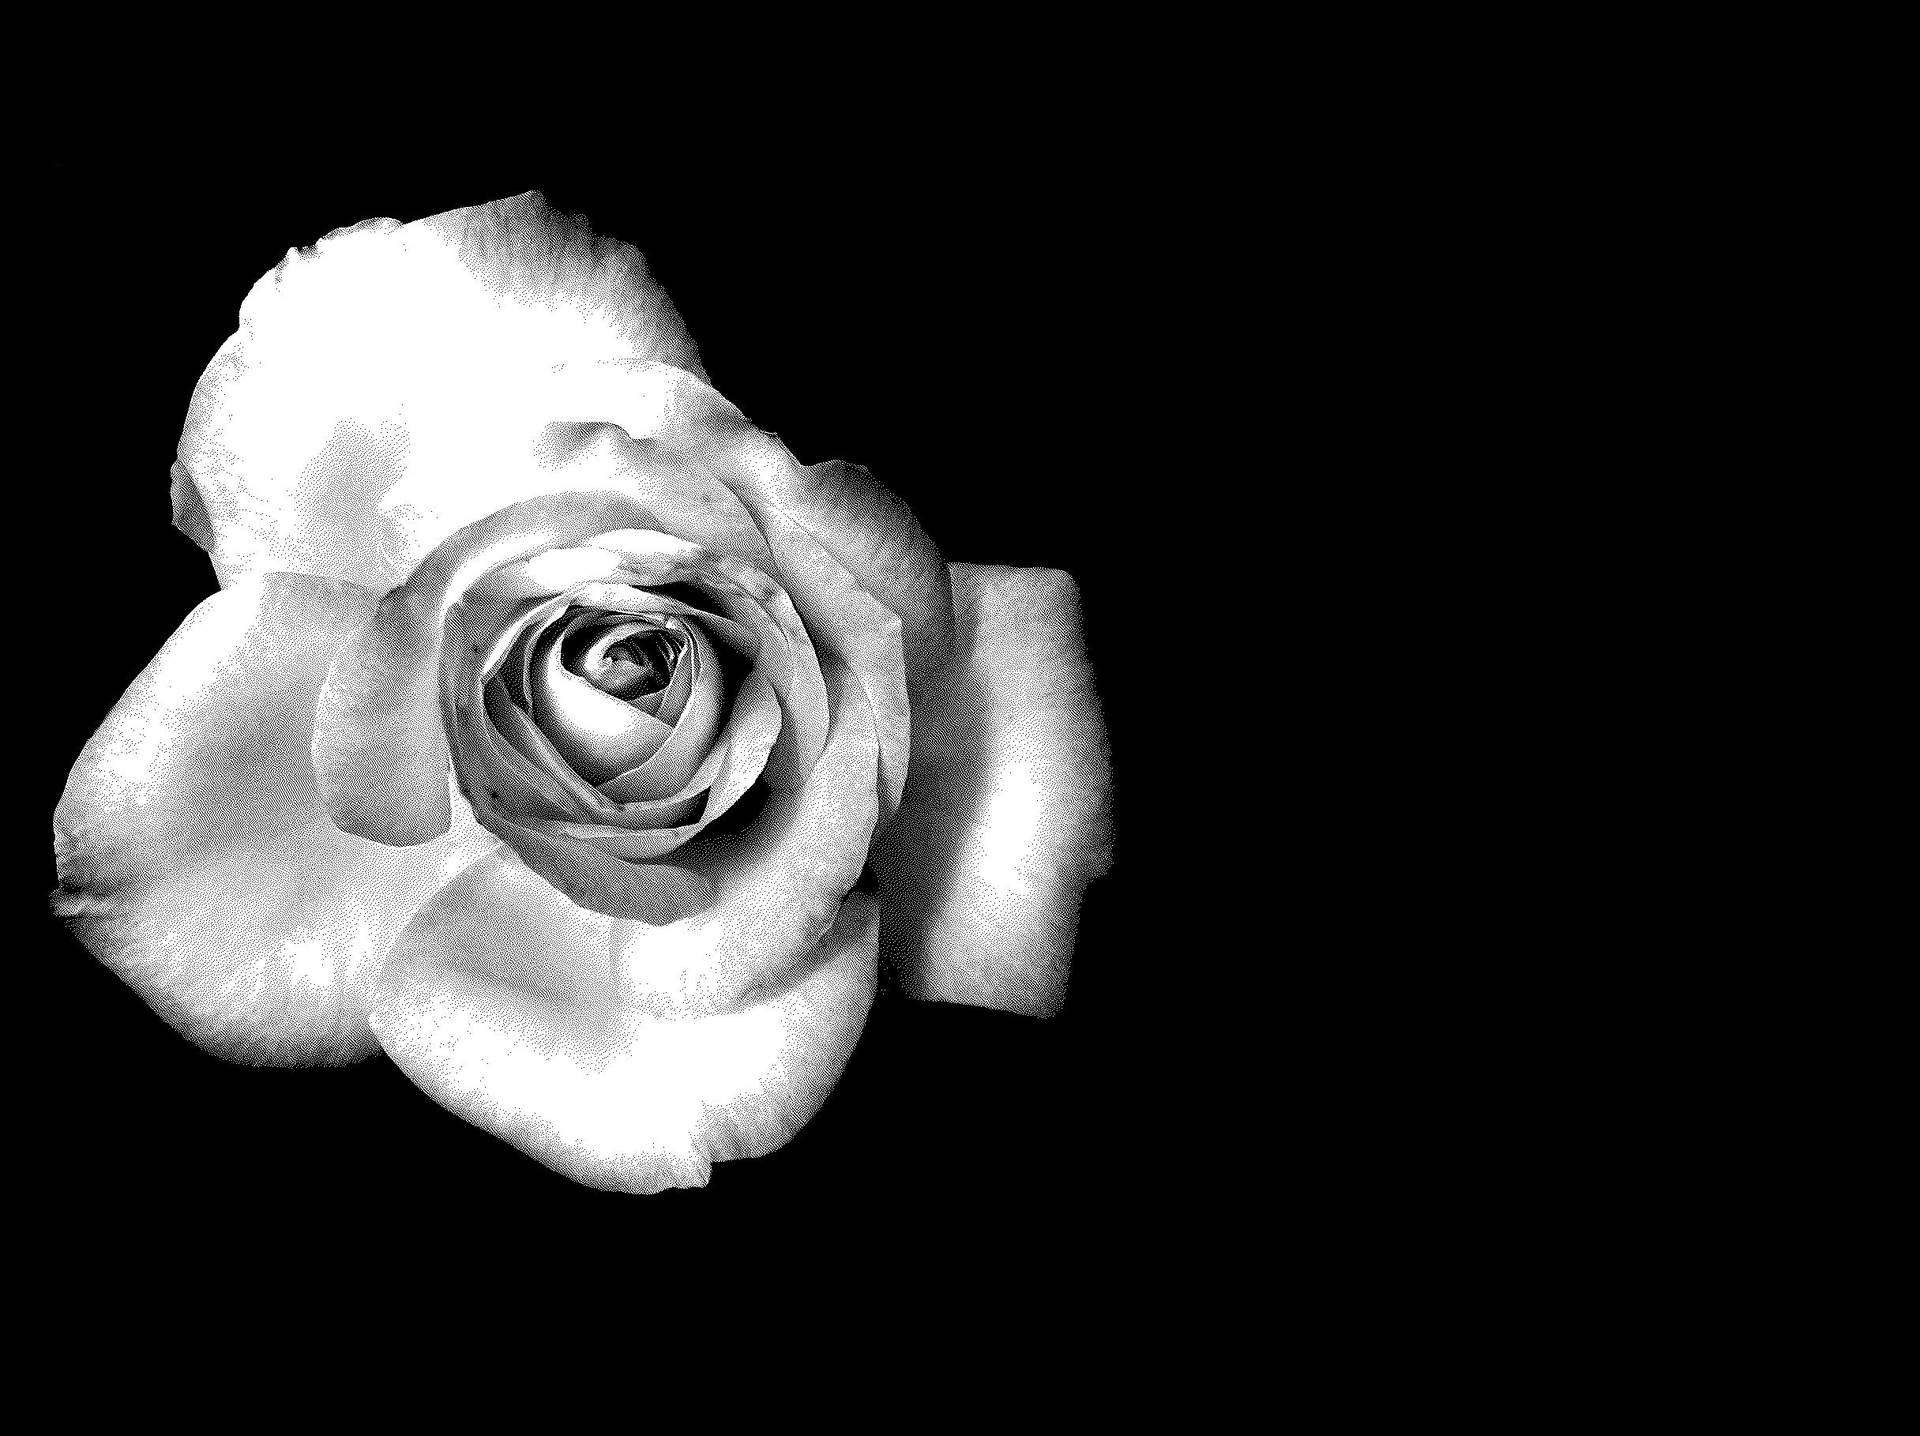 Vistasuperior De Una Rosa Negra Y Blanca En Pleno Florecimiento. Fondo de pantalla